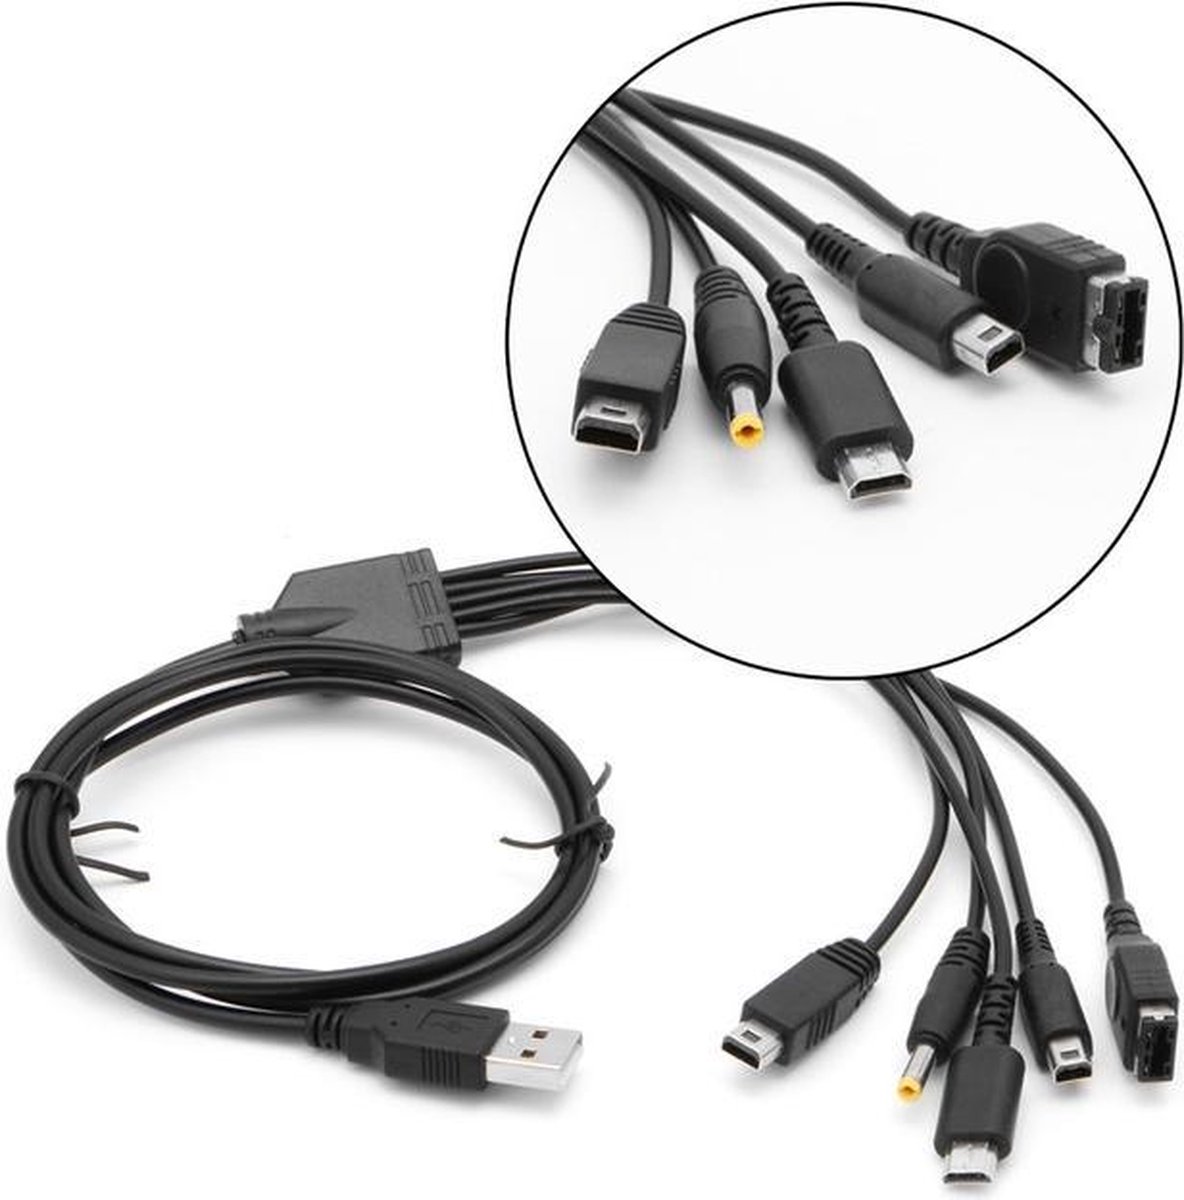 Chargeur USB pour (nouveau) 3DS (XL) / 2DS / DSi (XL), DS, DS Lite, GBA SP,  Sony PSP, manette de jeu Wii U